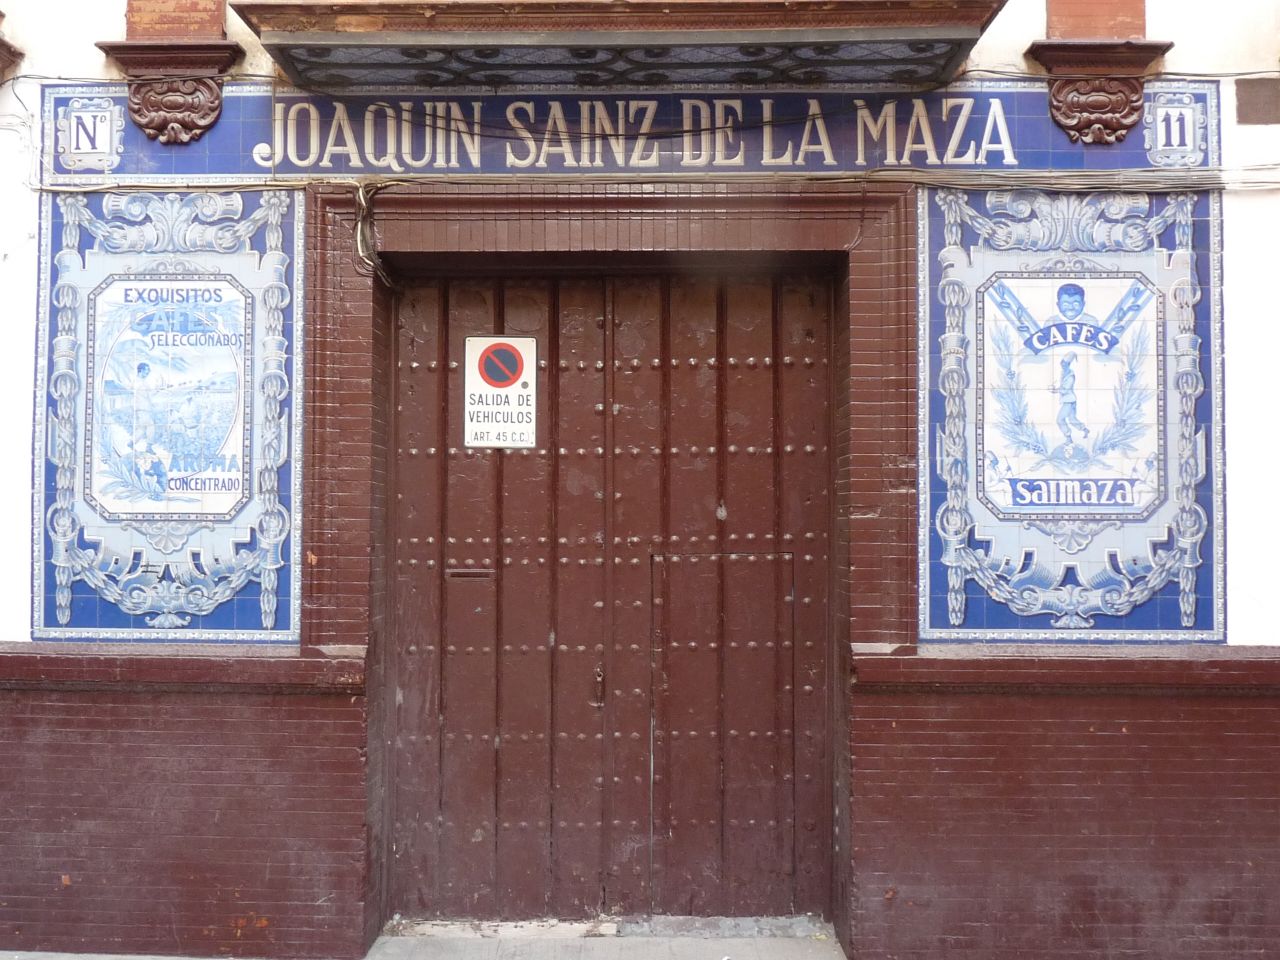 D00240. Intervención de Restauración sobre los paneles cerámicos publicitarios de la Casa Saimaza en Sevilla